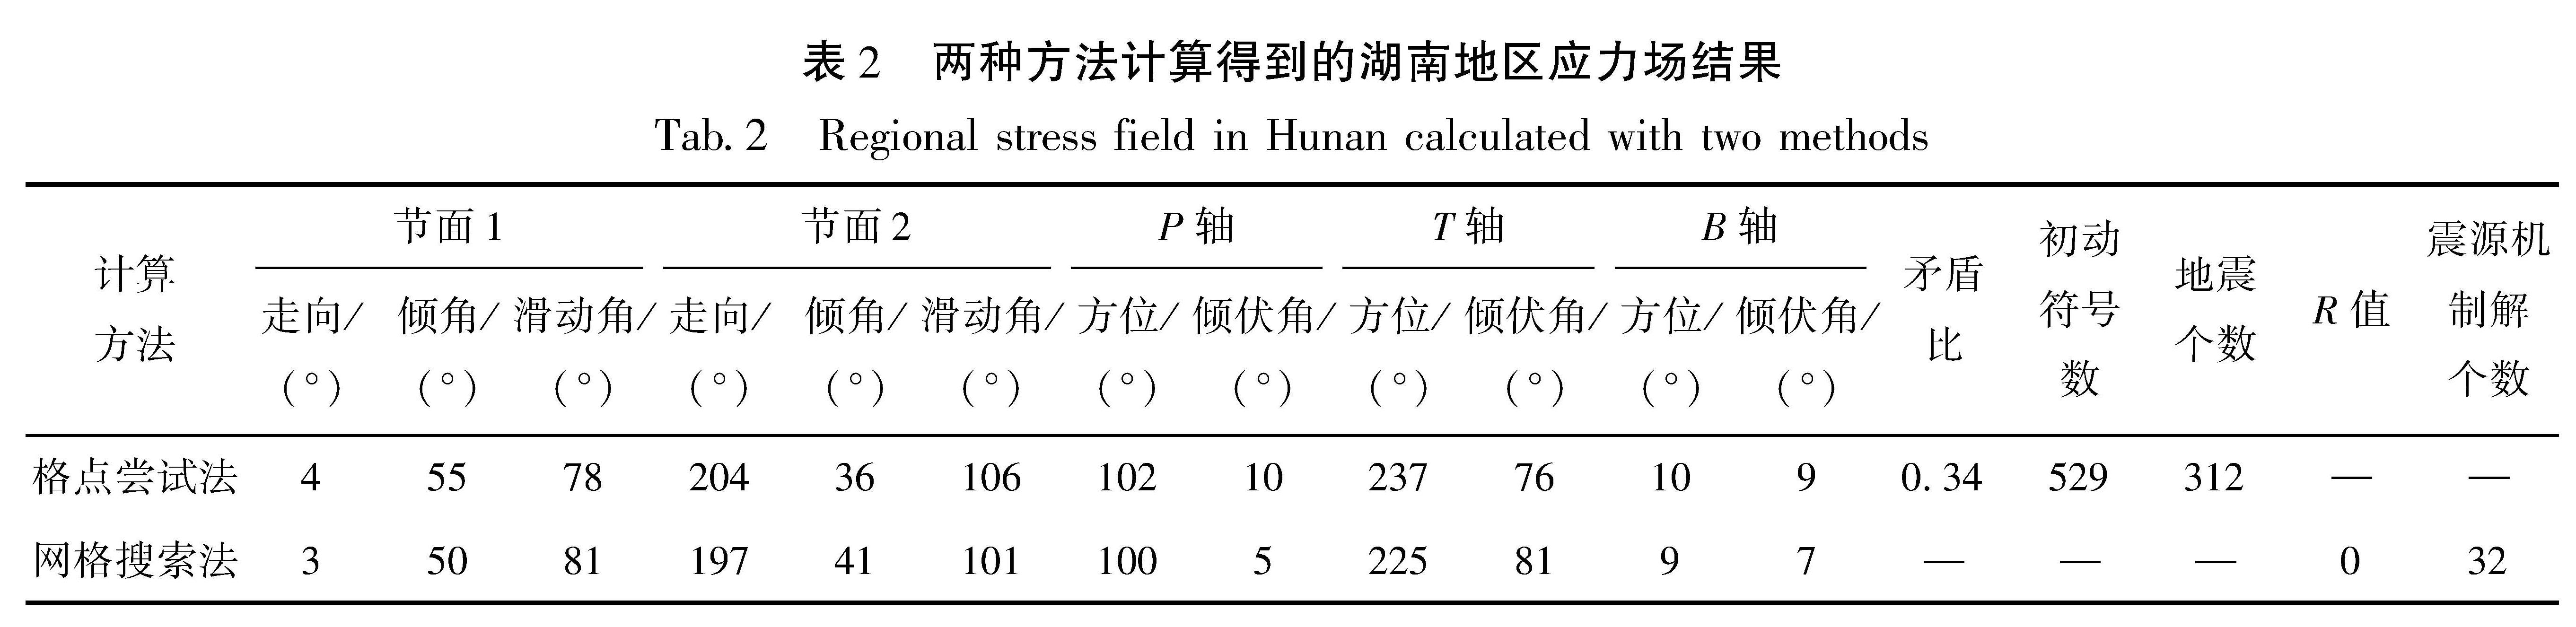 表2 两种方法计算得到的湖南地区应力场结果<br/>Tab.2 Regional stress field in Hunan calculated with two methods